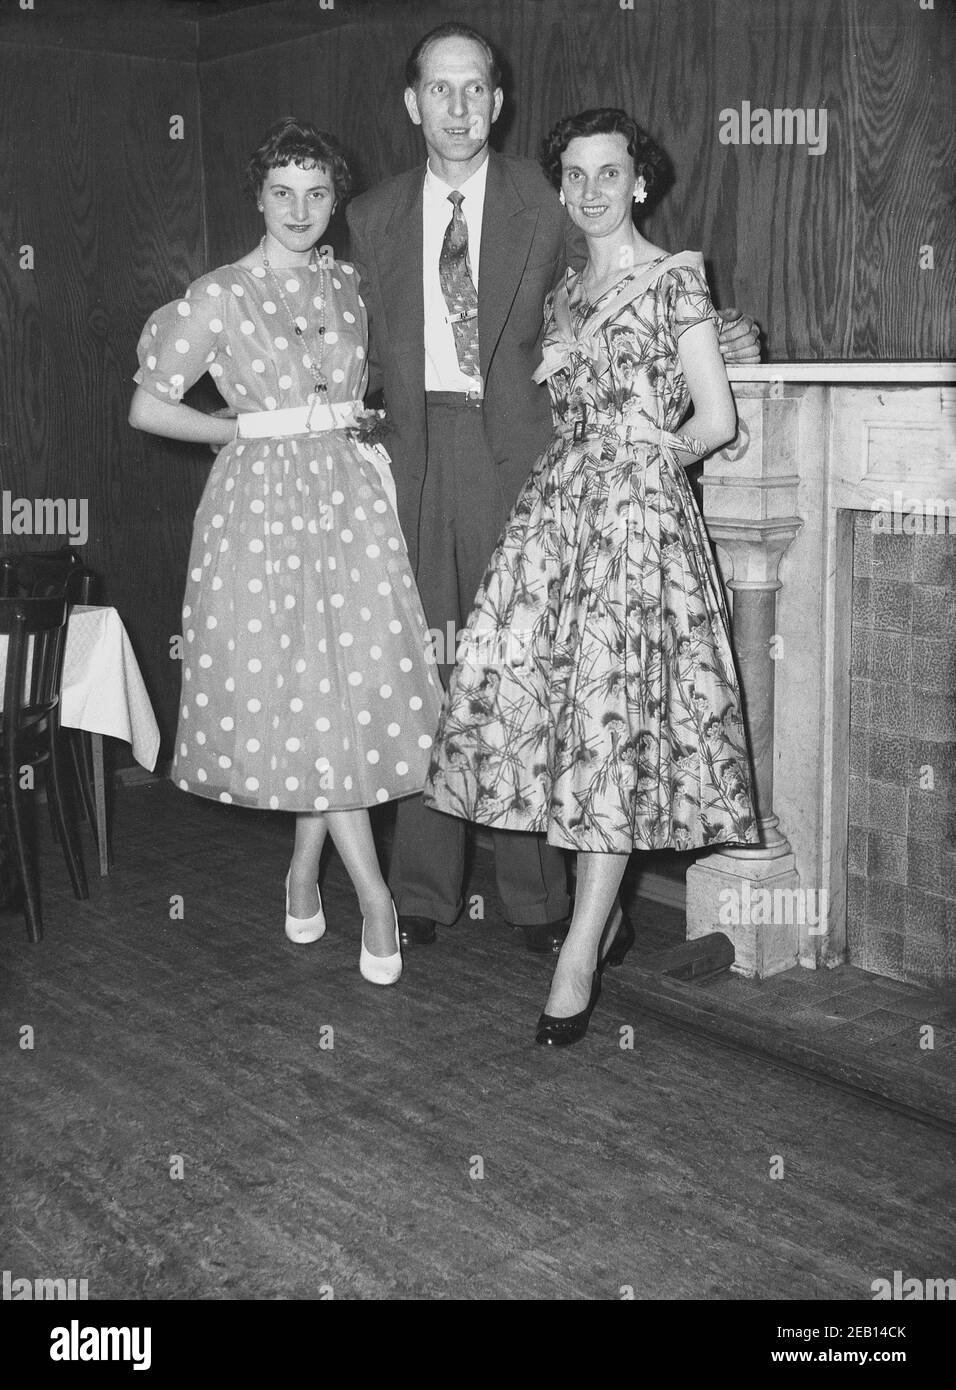 Años 50, histórica, joven dama en un vestido de topos o lunares de moda en esta época de pie para una foto con una pareja en su cumpleaños pary en una sala de eventos de hotel, Inglaterra, Reino Unido. Foto de stock